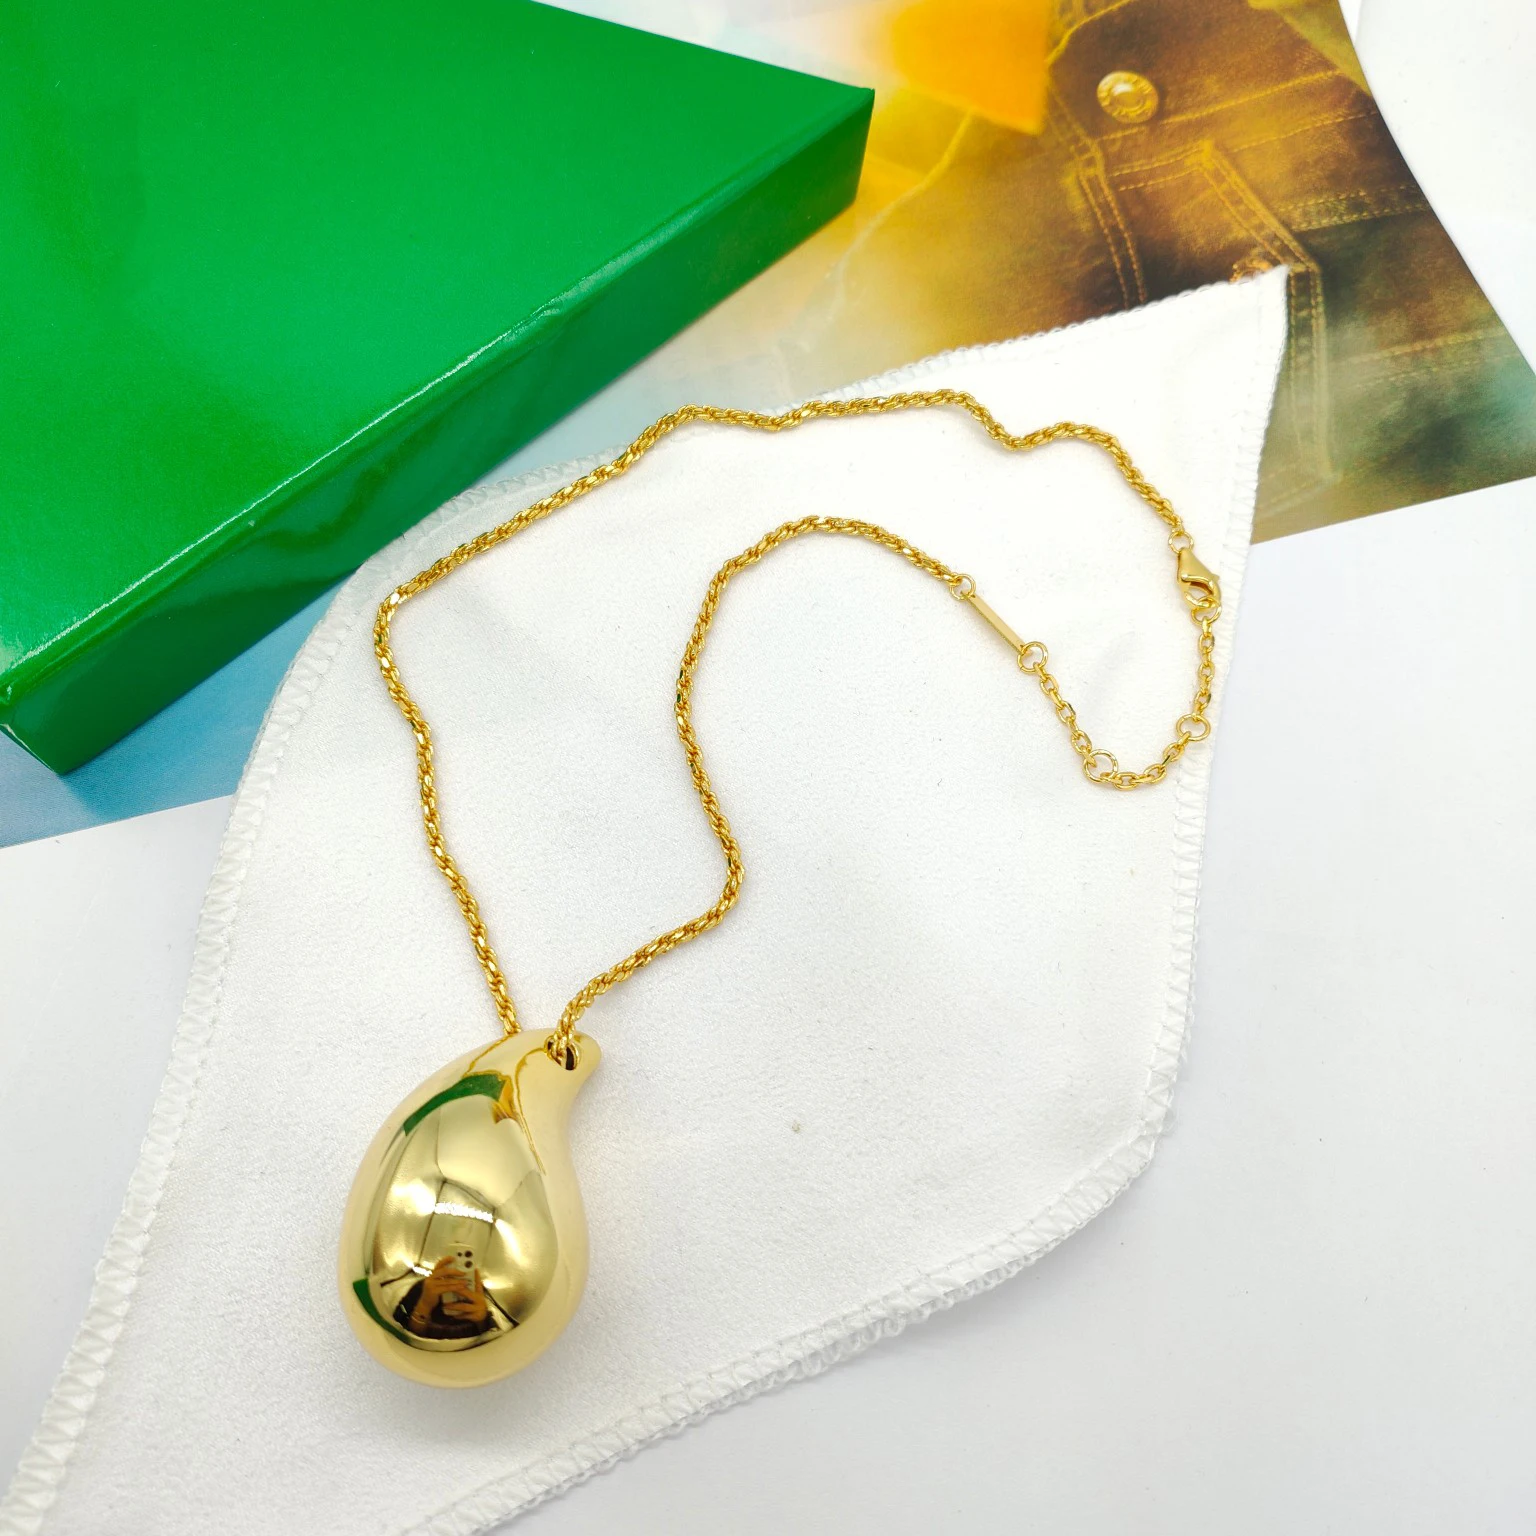 

2023 модное ожерелье от известного бренда в форме капли воды, Золотое и серебряное ожерелье для женщин, высшее качество, роскошные ювелирные изделия, дизайнерские тренды в Европе и Америке